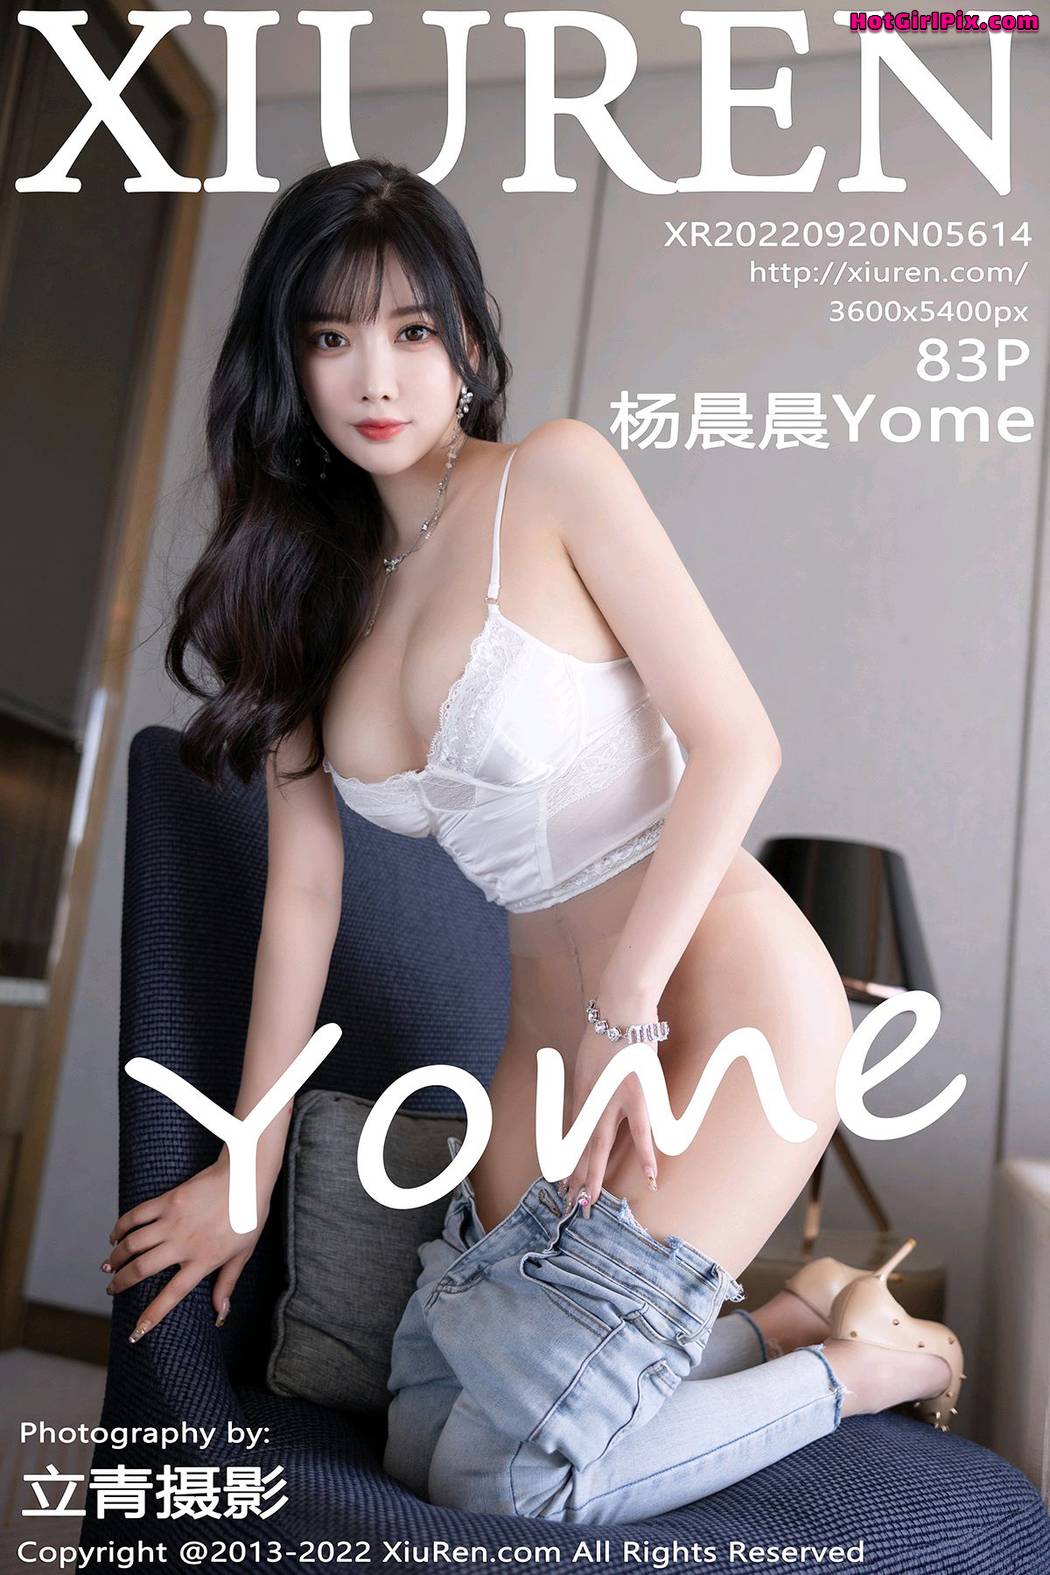 [XIUREN] No.5614 Yang Chen Chen 杨晨晨Yome (Yang Chen Chen 杨晨晨sugar) Cover Photo